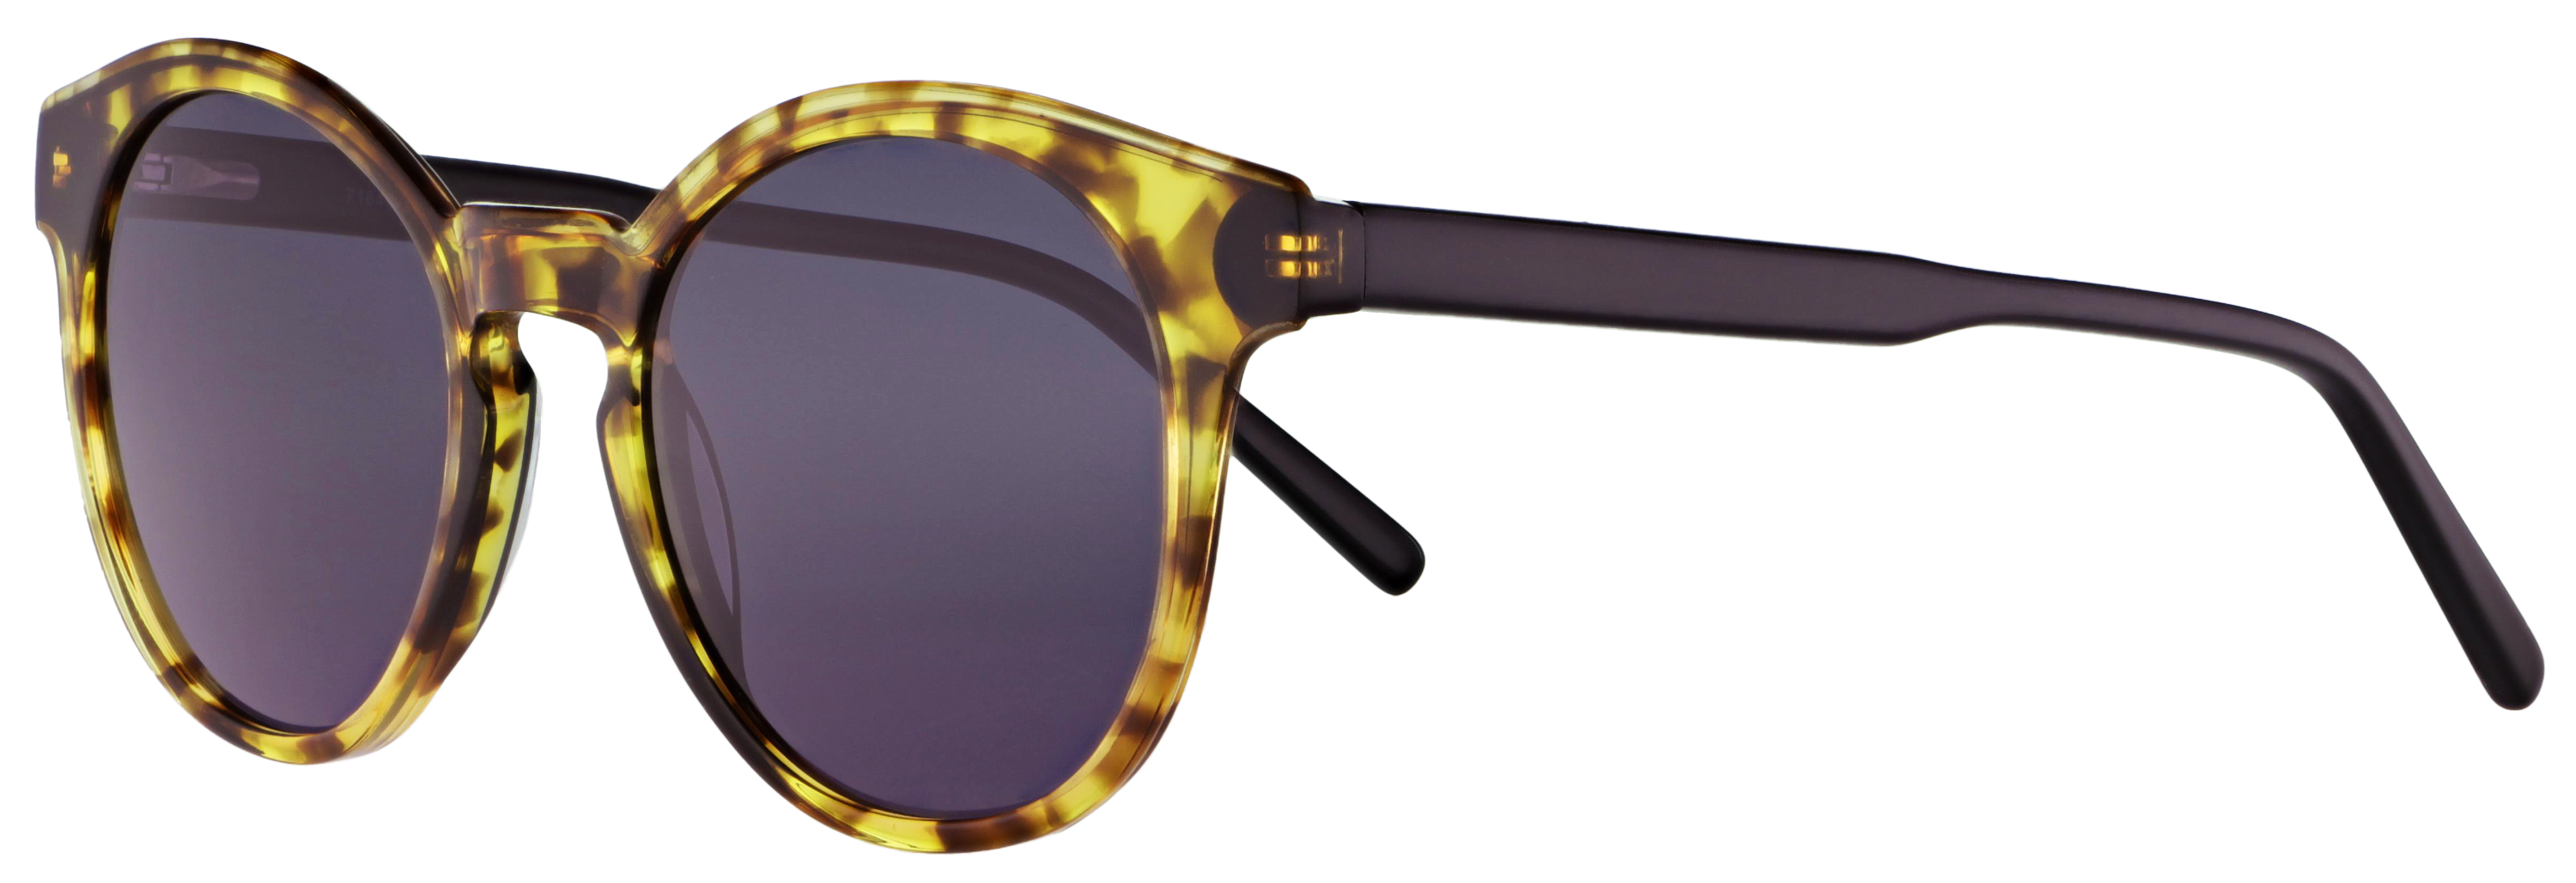 Das Bild zeigt die Sonnenbrille 718401 von der Marke Abele Optik in schwarz-braun.